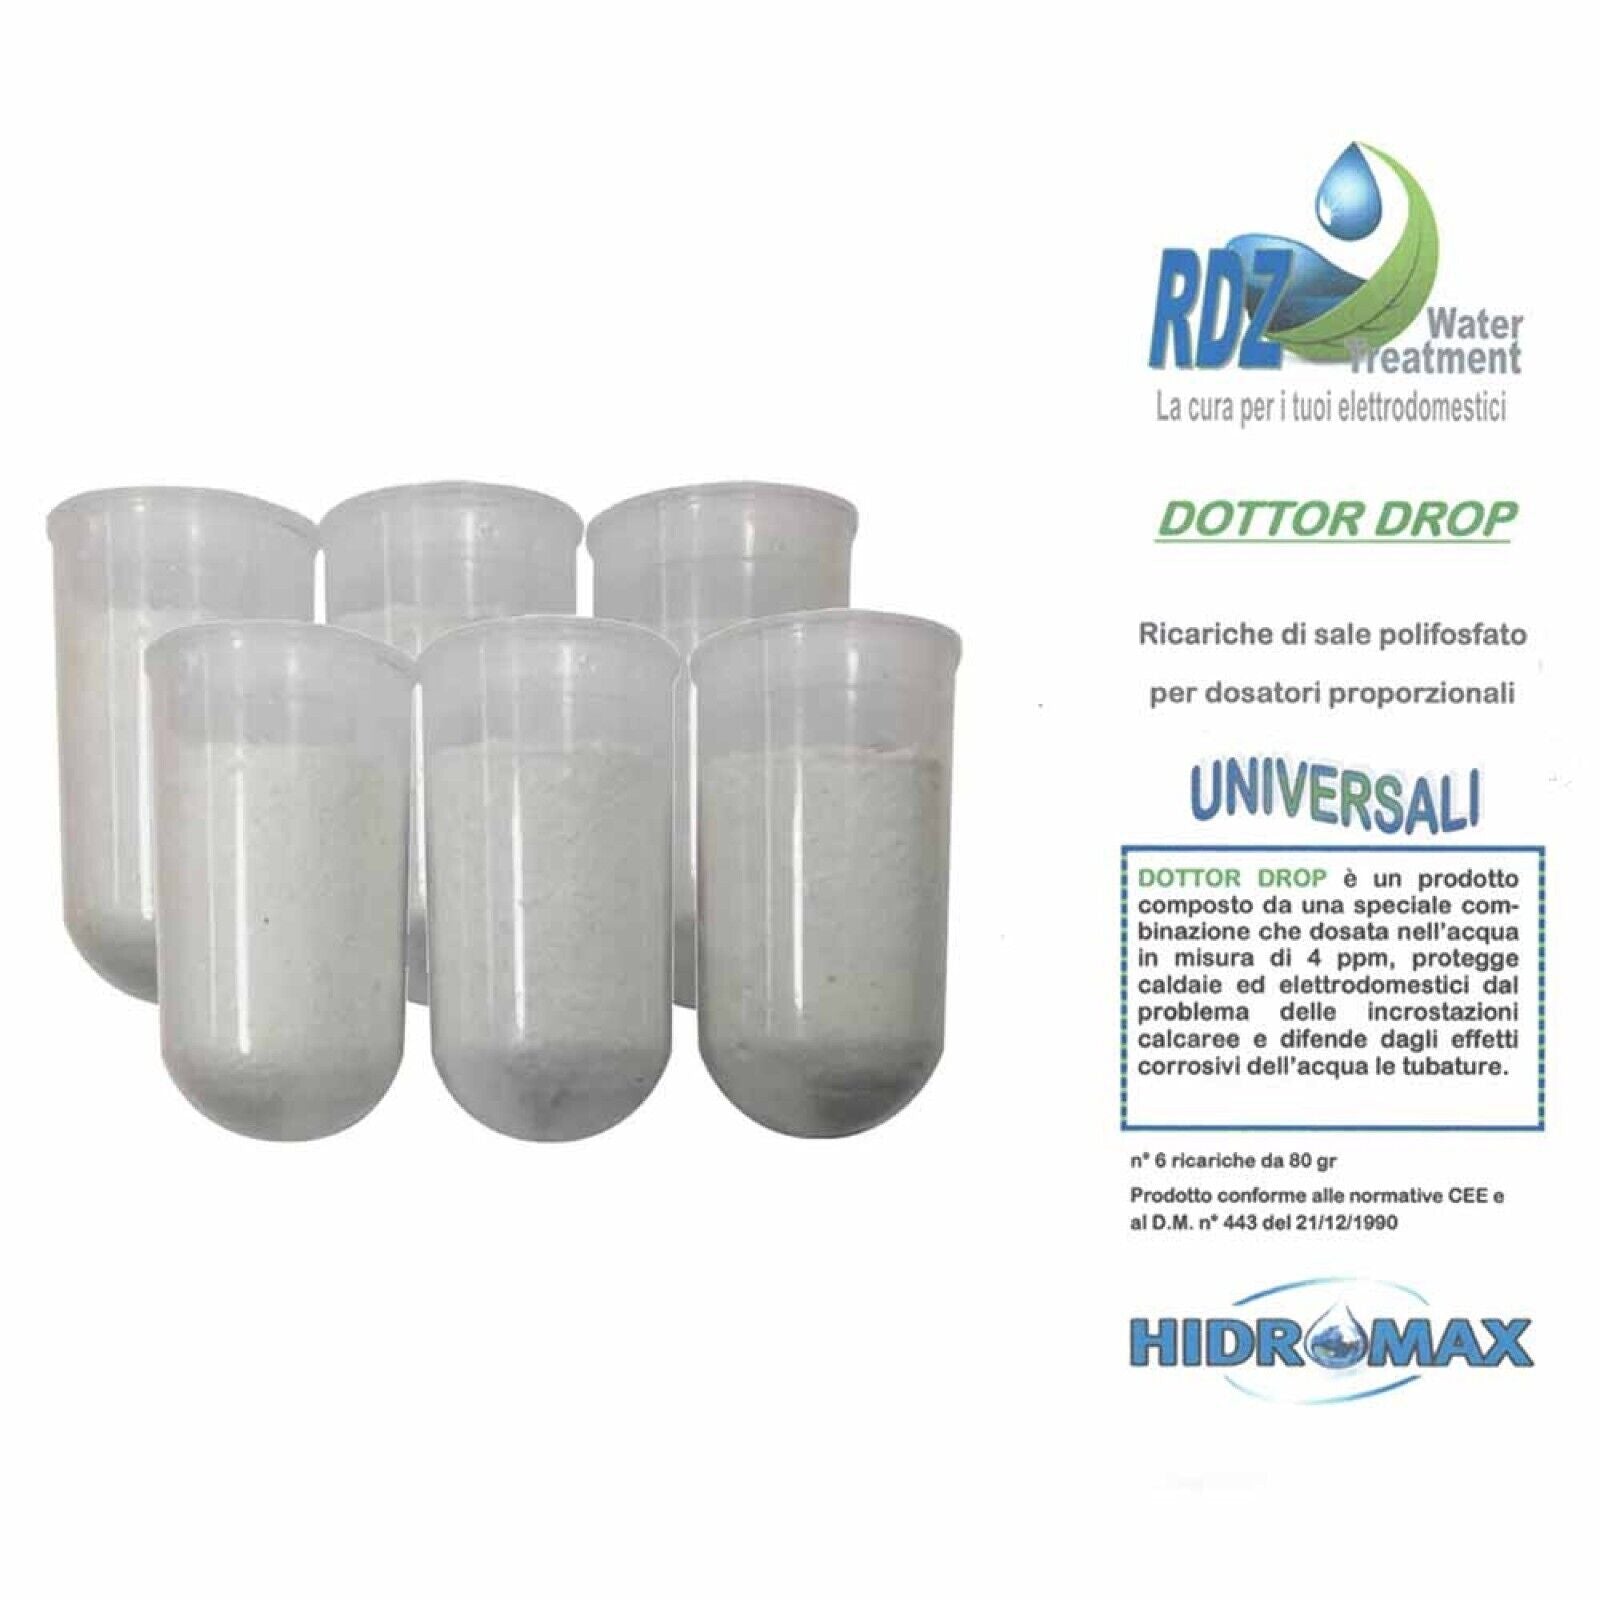 Ricariche Polifosfati Hidromax Dottor Drop blister 6 cartucce per dosatore caldaia